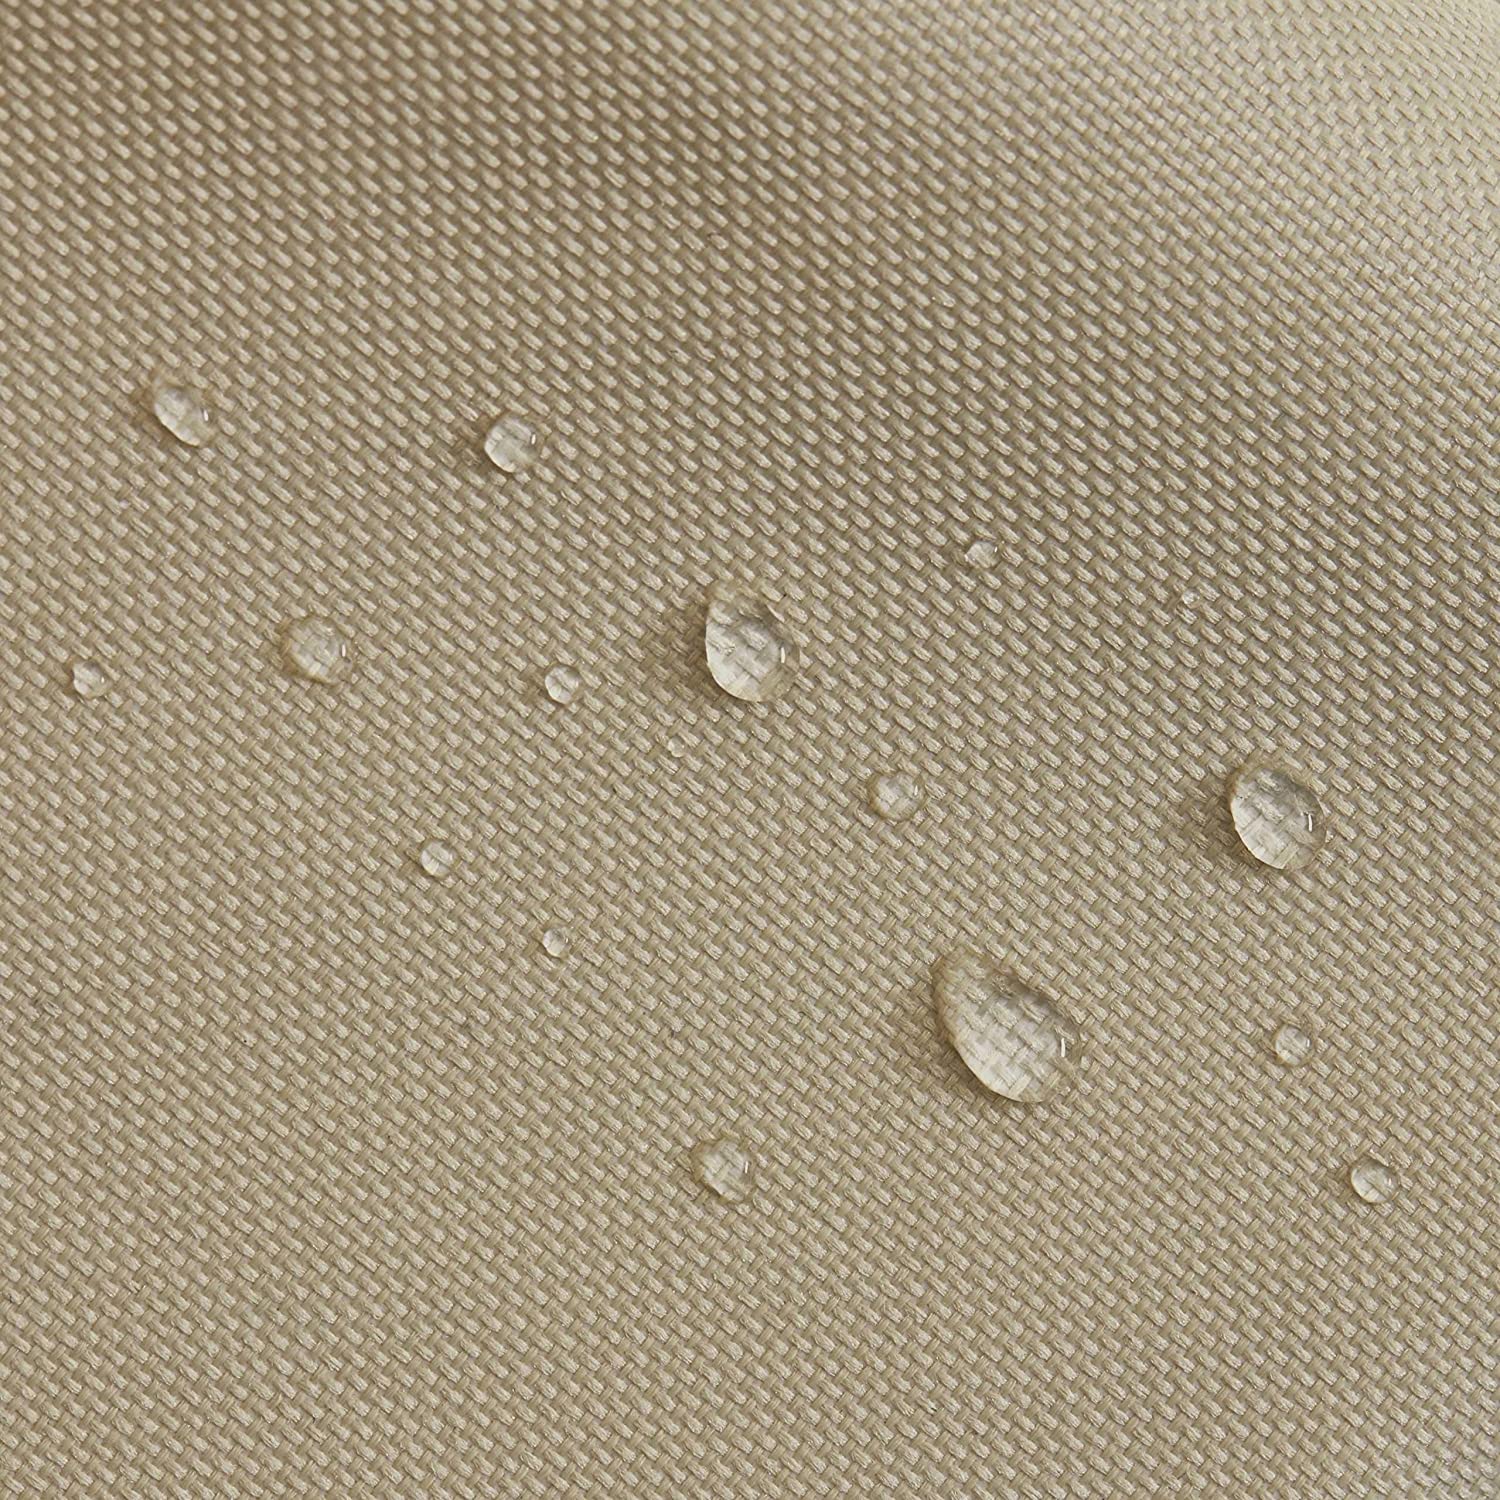 Abdeckung für Sonnenschirm - 160 x 50/65 cm - Beige